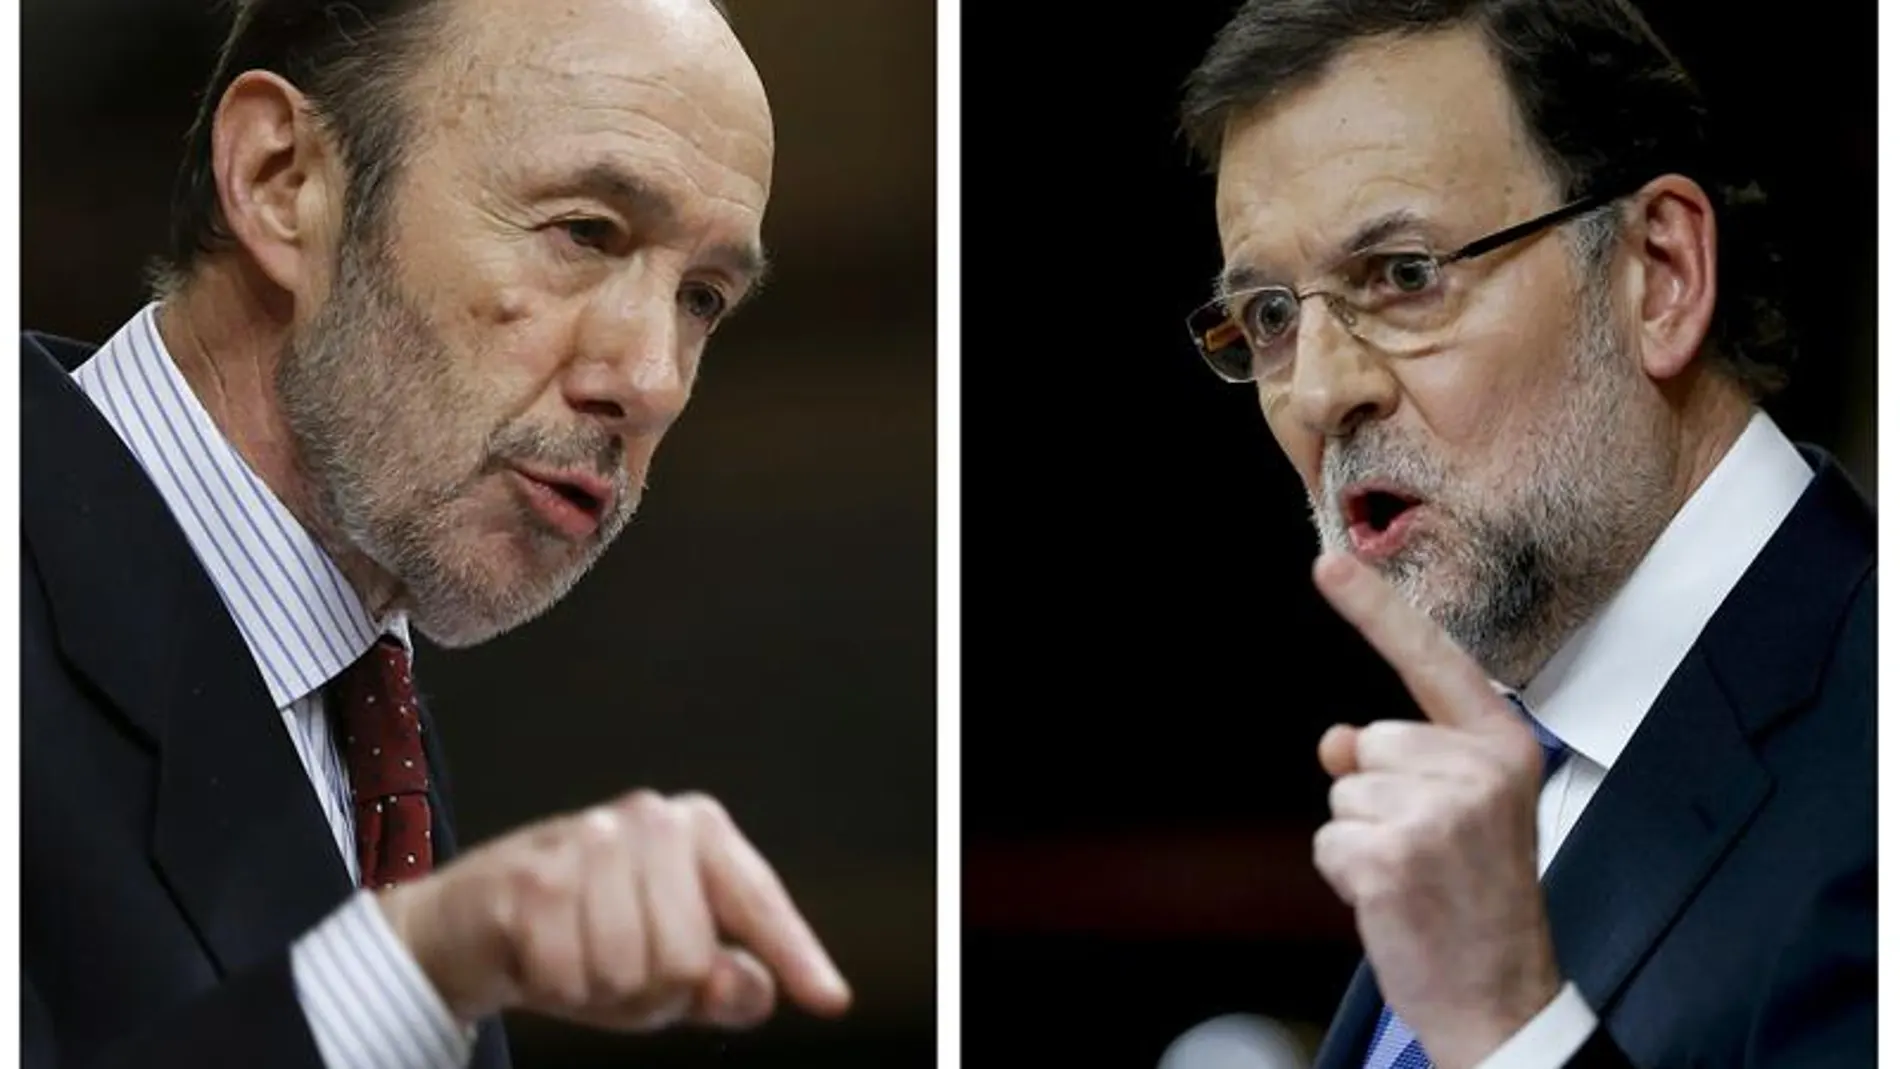 Rajoy y Rubalcaba en el debate